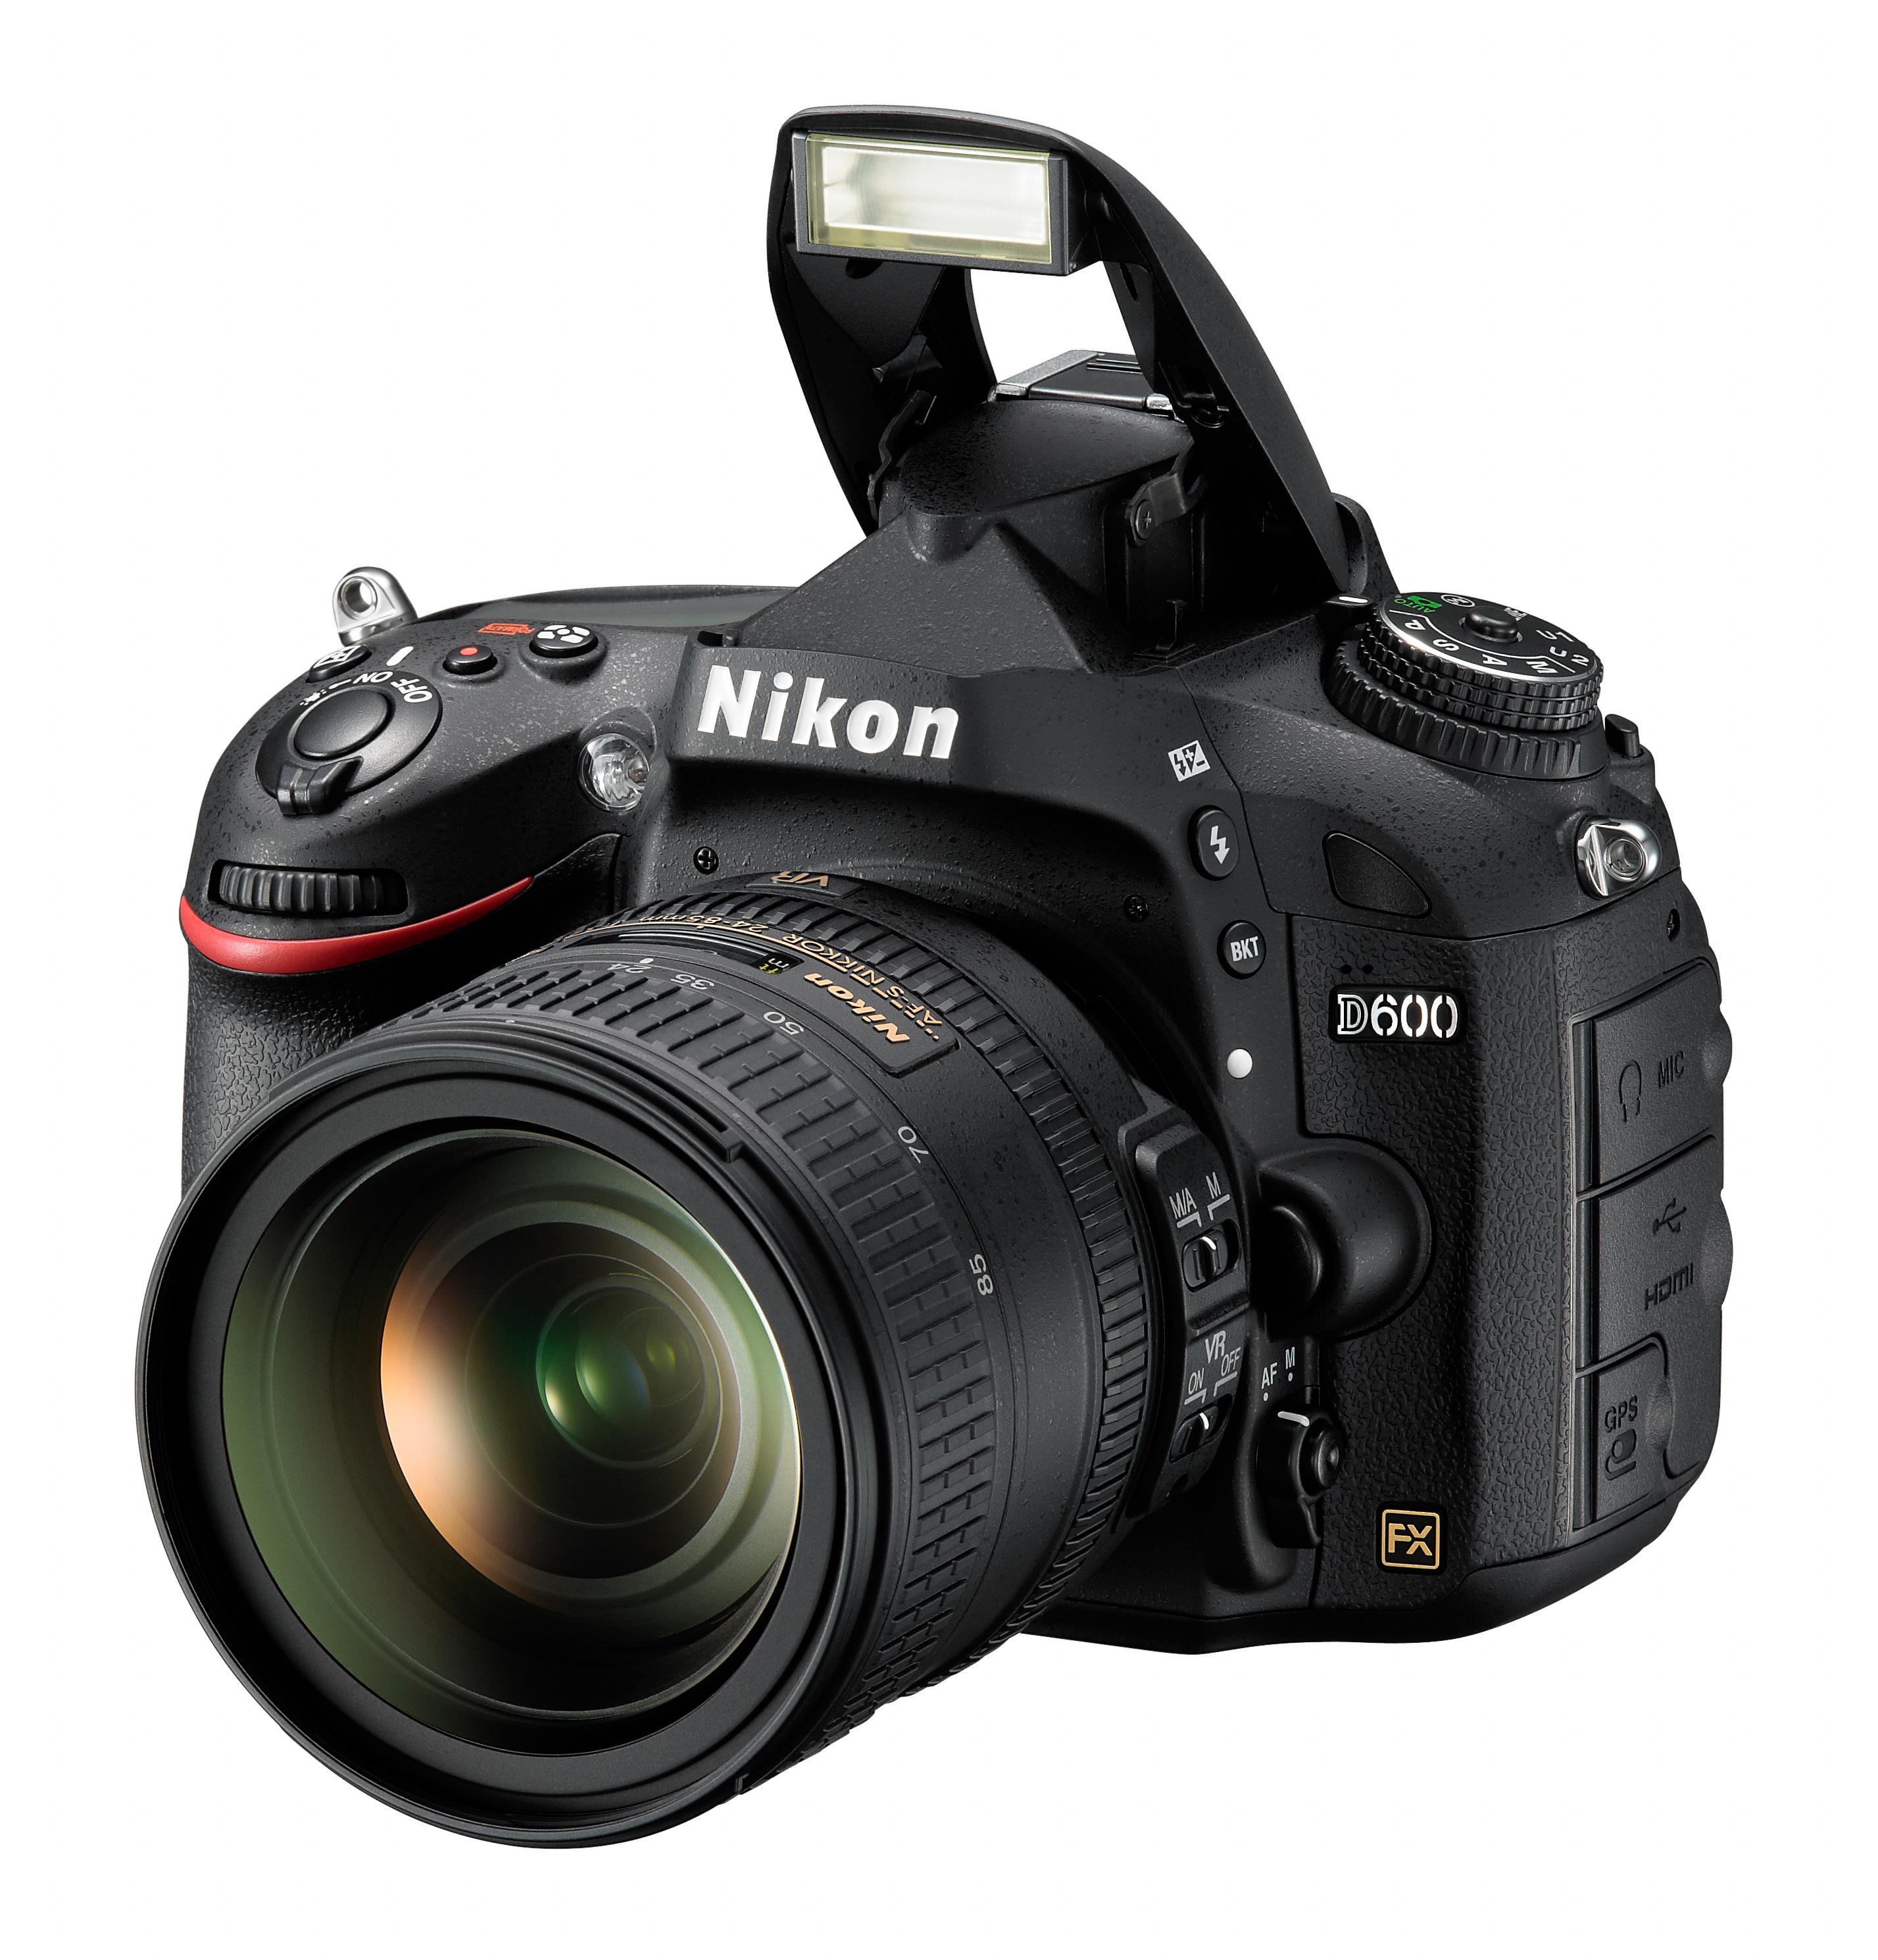 Nikon D600 med blitsen oppe.Foto: Nikon